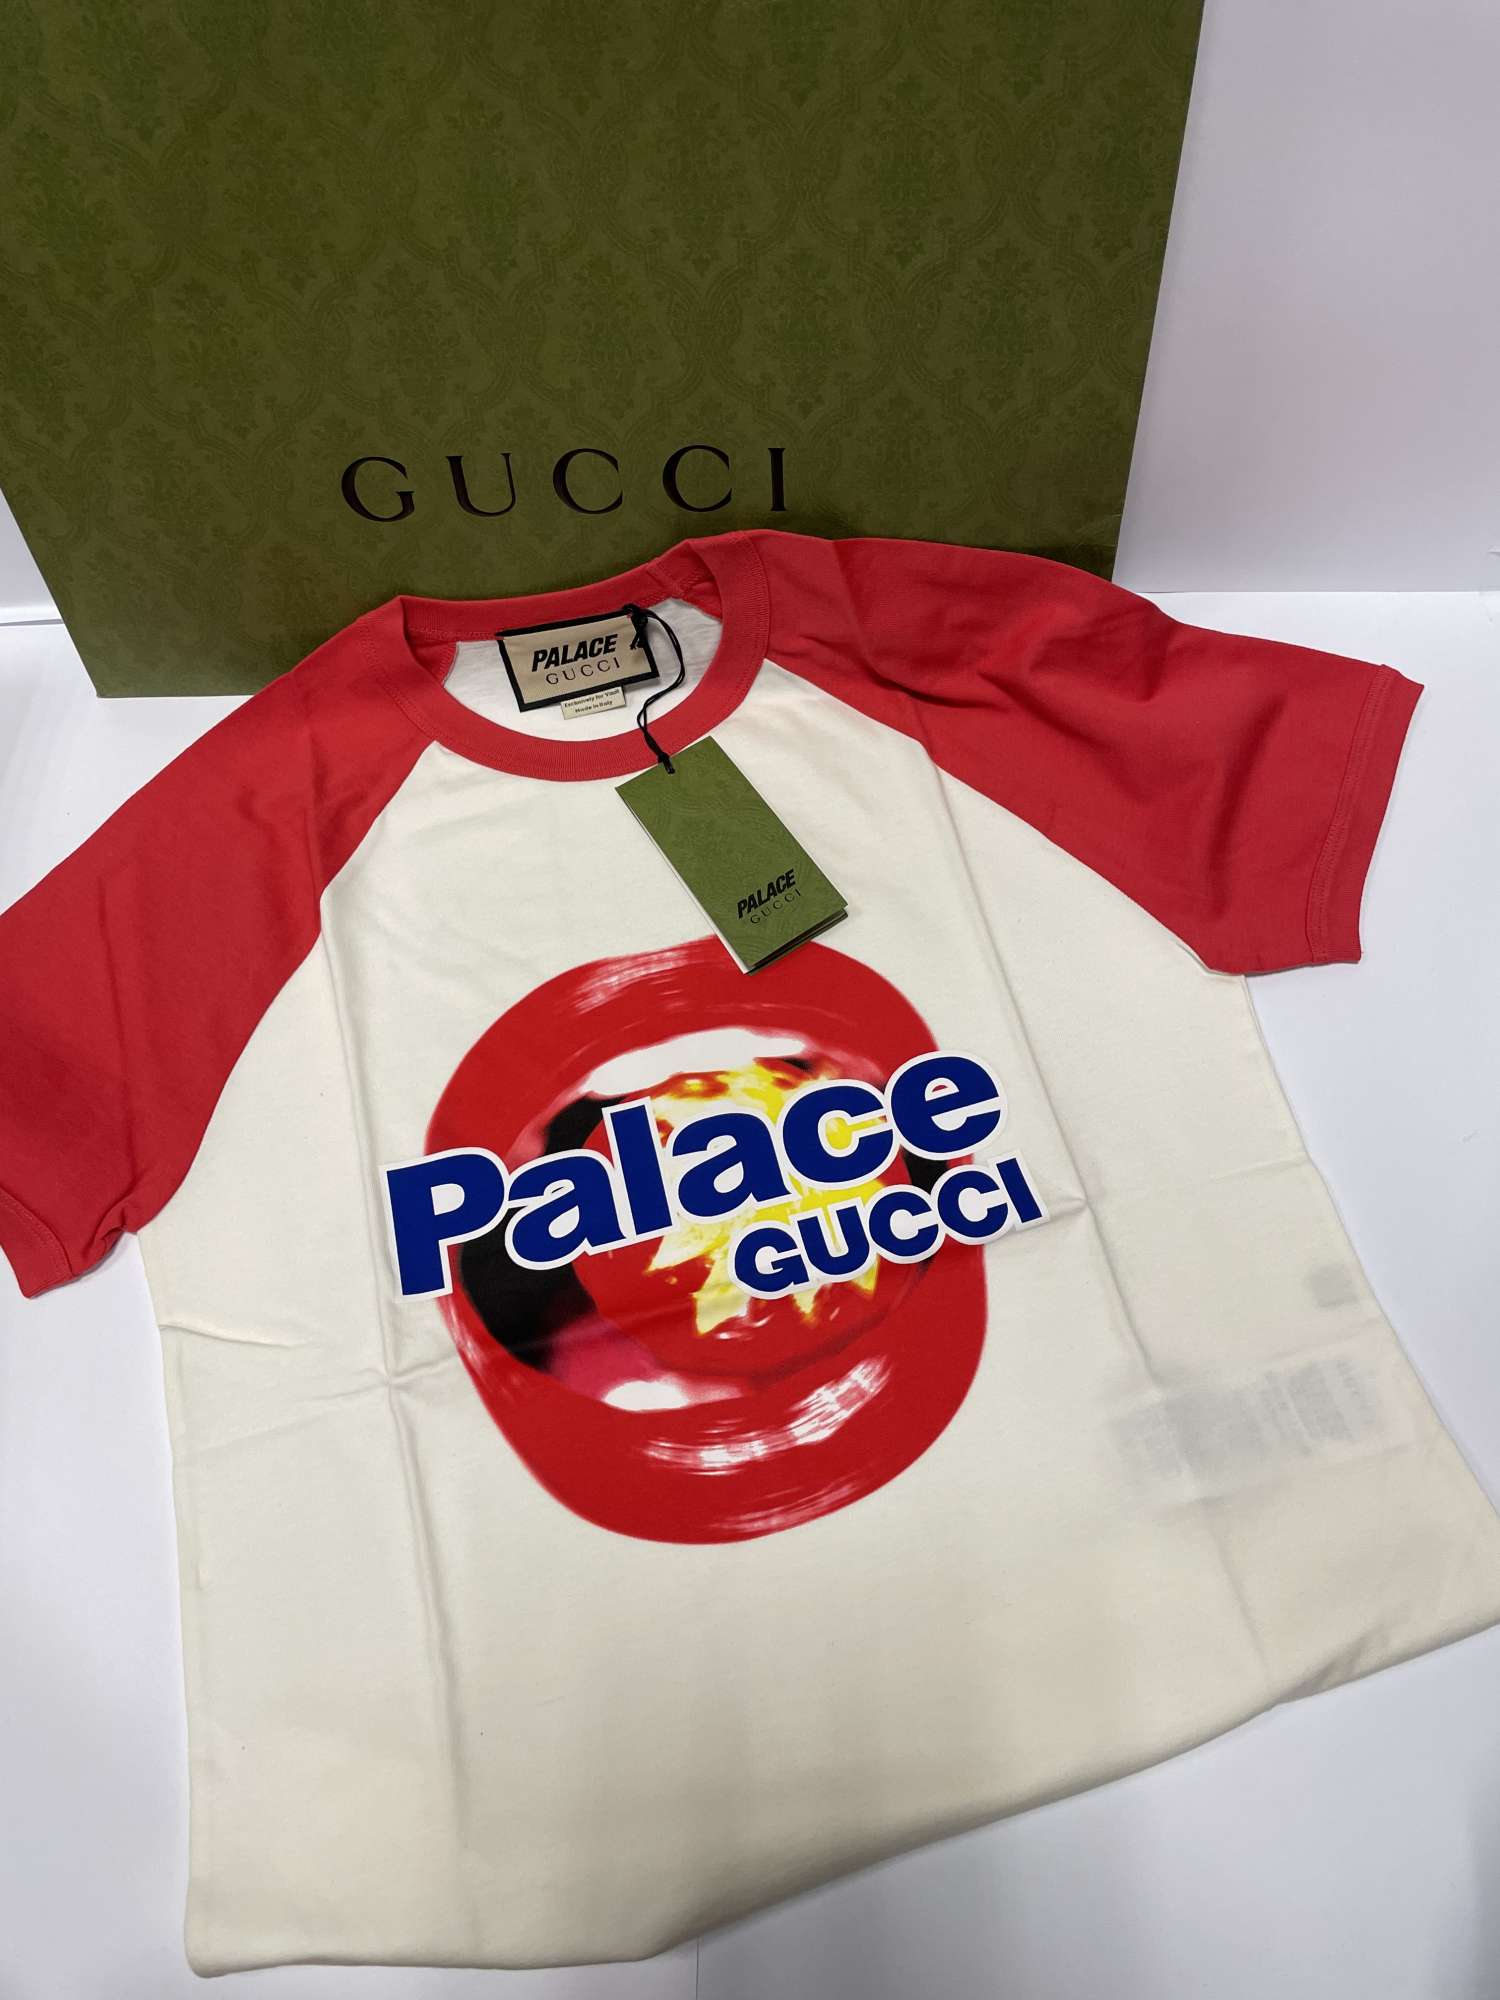 Gucci x palace tričko